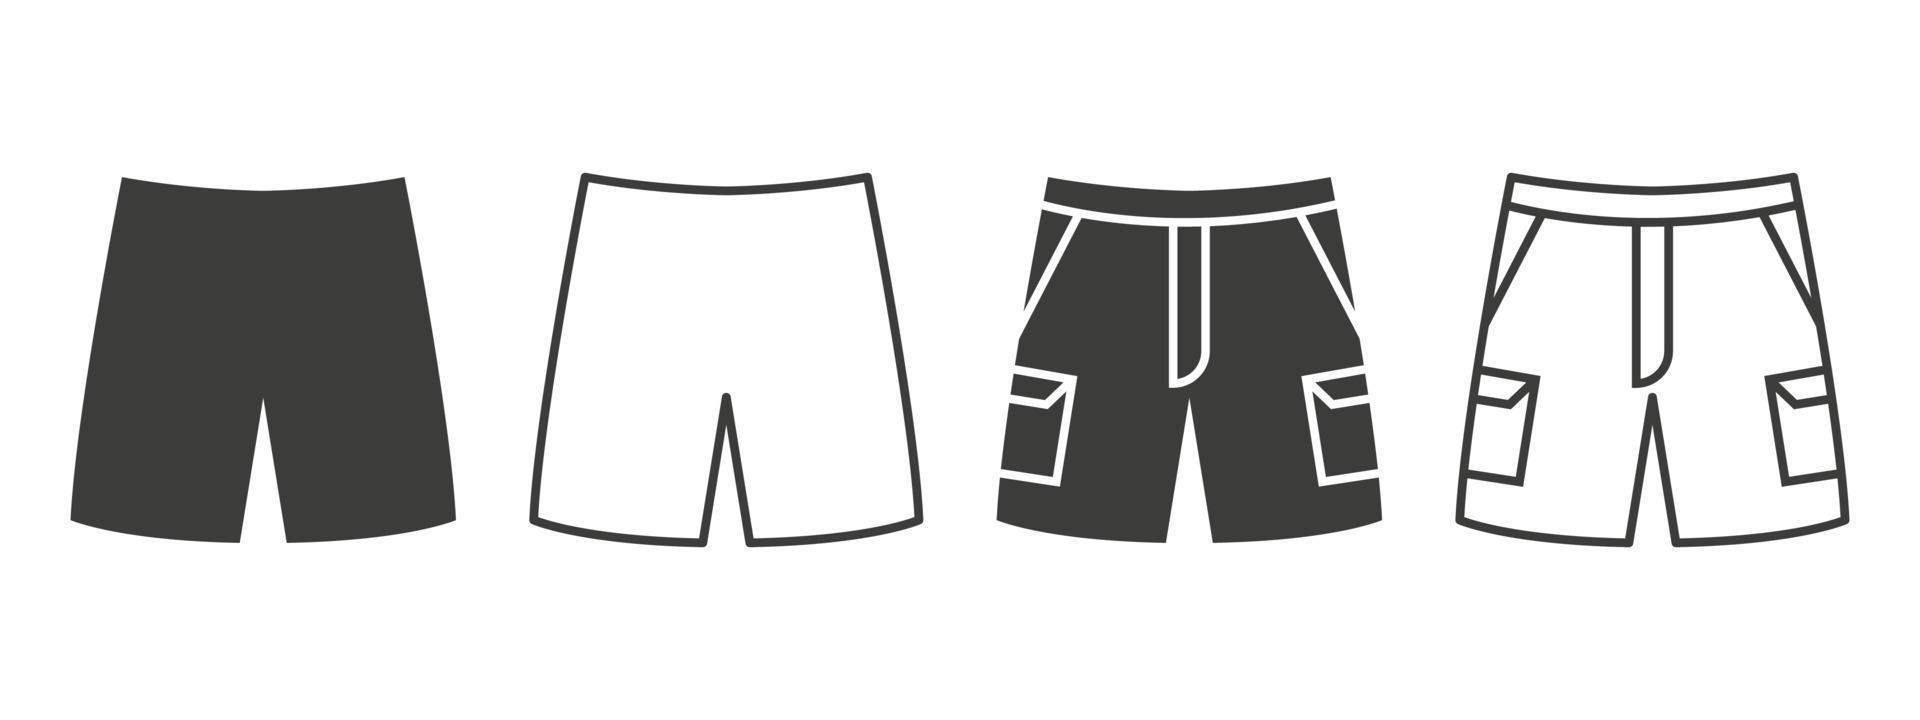 shorts pictogrammen. shorts met zakken van verschillend stijlen. kleding symbool concept. vector illustratie